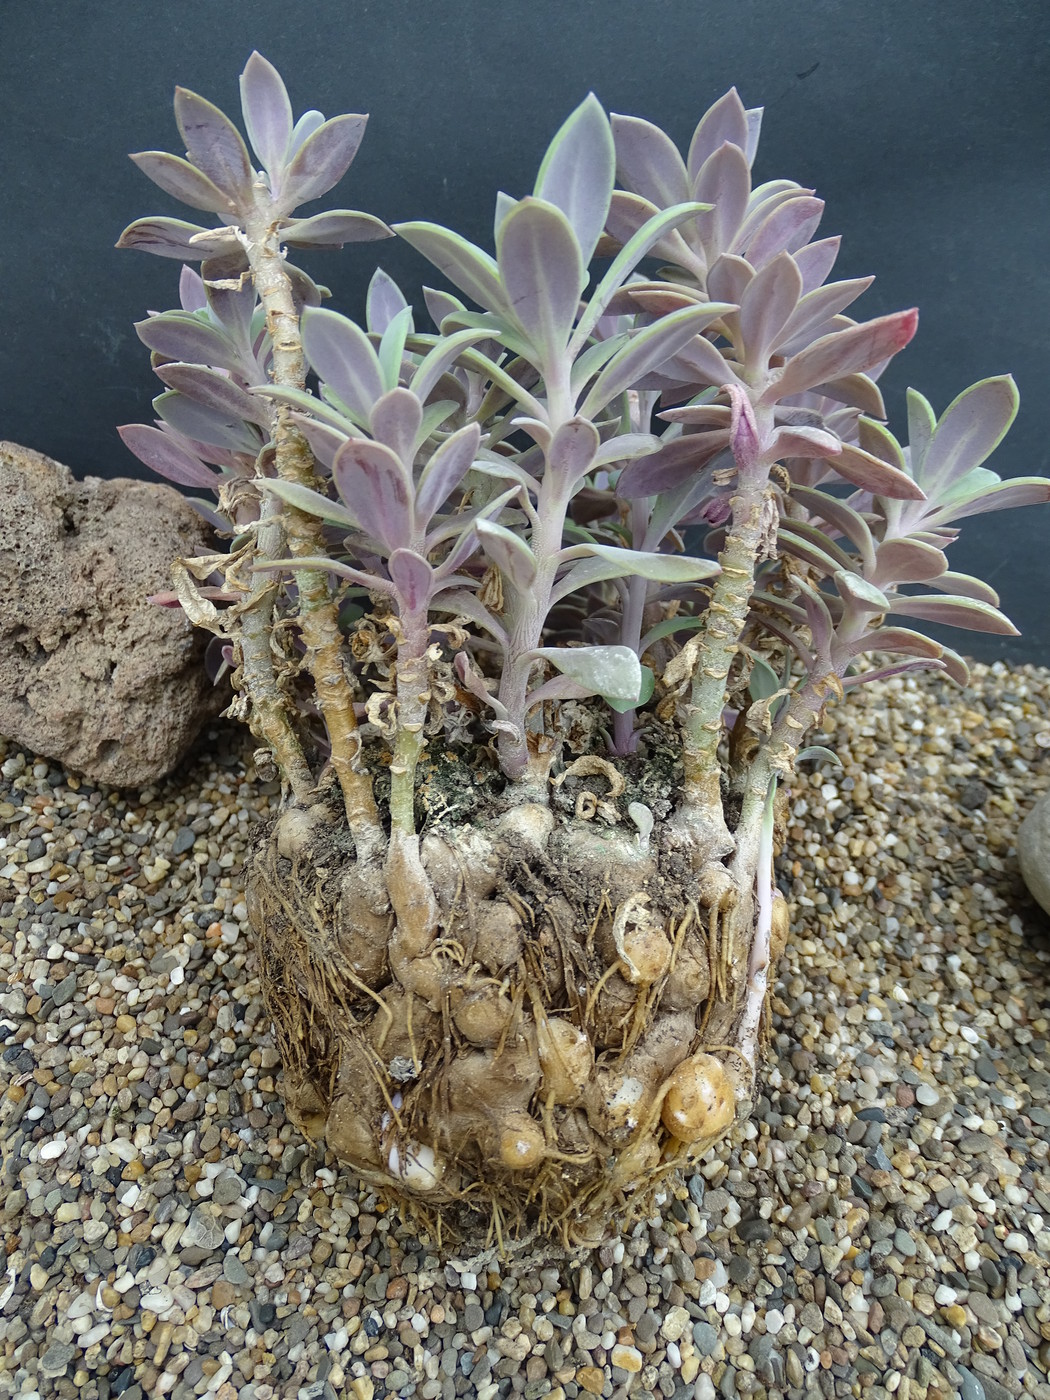 Senecio semperviva ssp. grantii - the roots